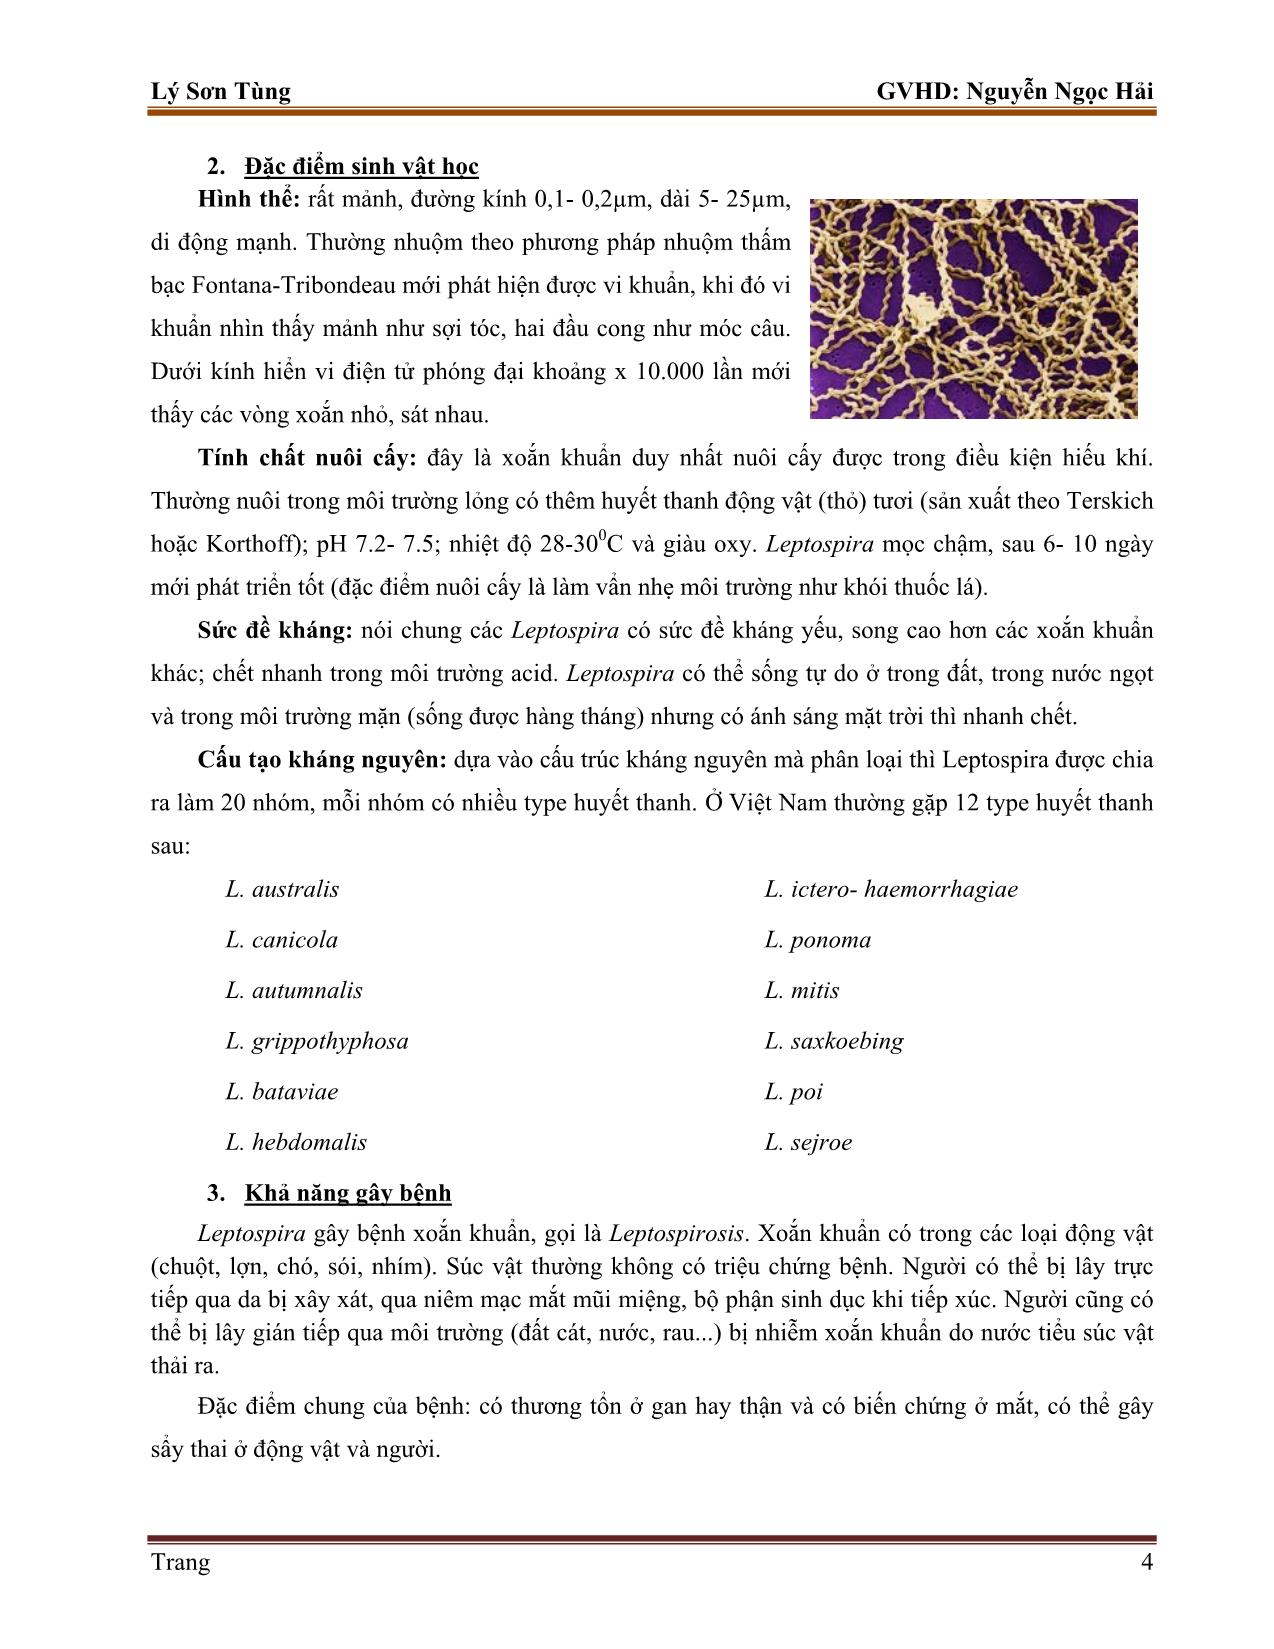 Tiểu luận Một số kỹ thuật chẩn đoán vi khuẩn leptospira trang 4